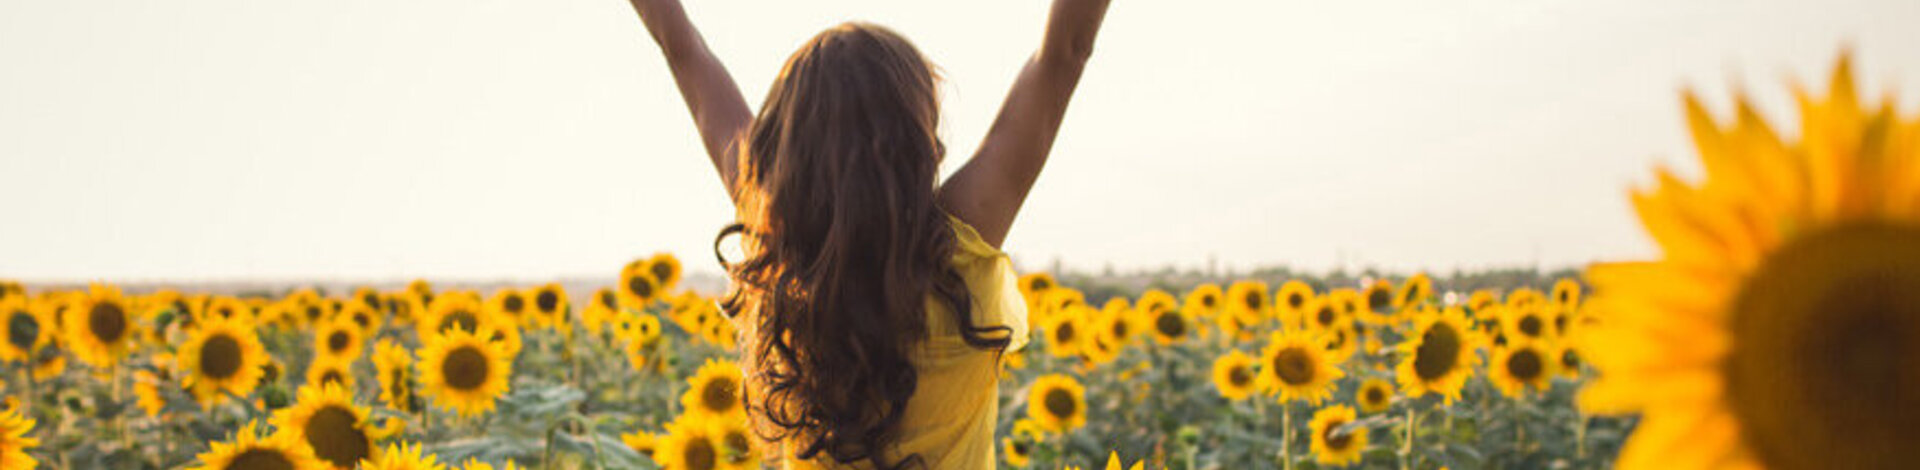 Zu sehen ist eine junge Frau die ihre Arme in einem Sonnenblumenfeld in die Höhe streckt.